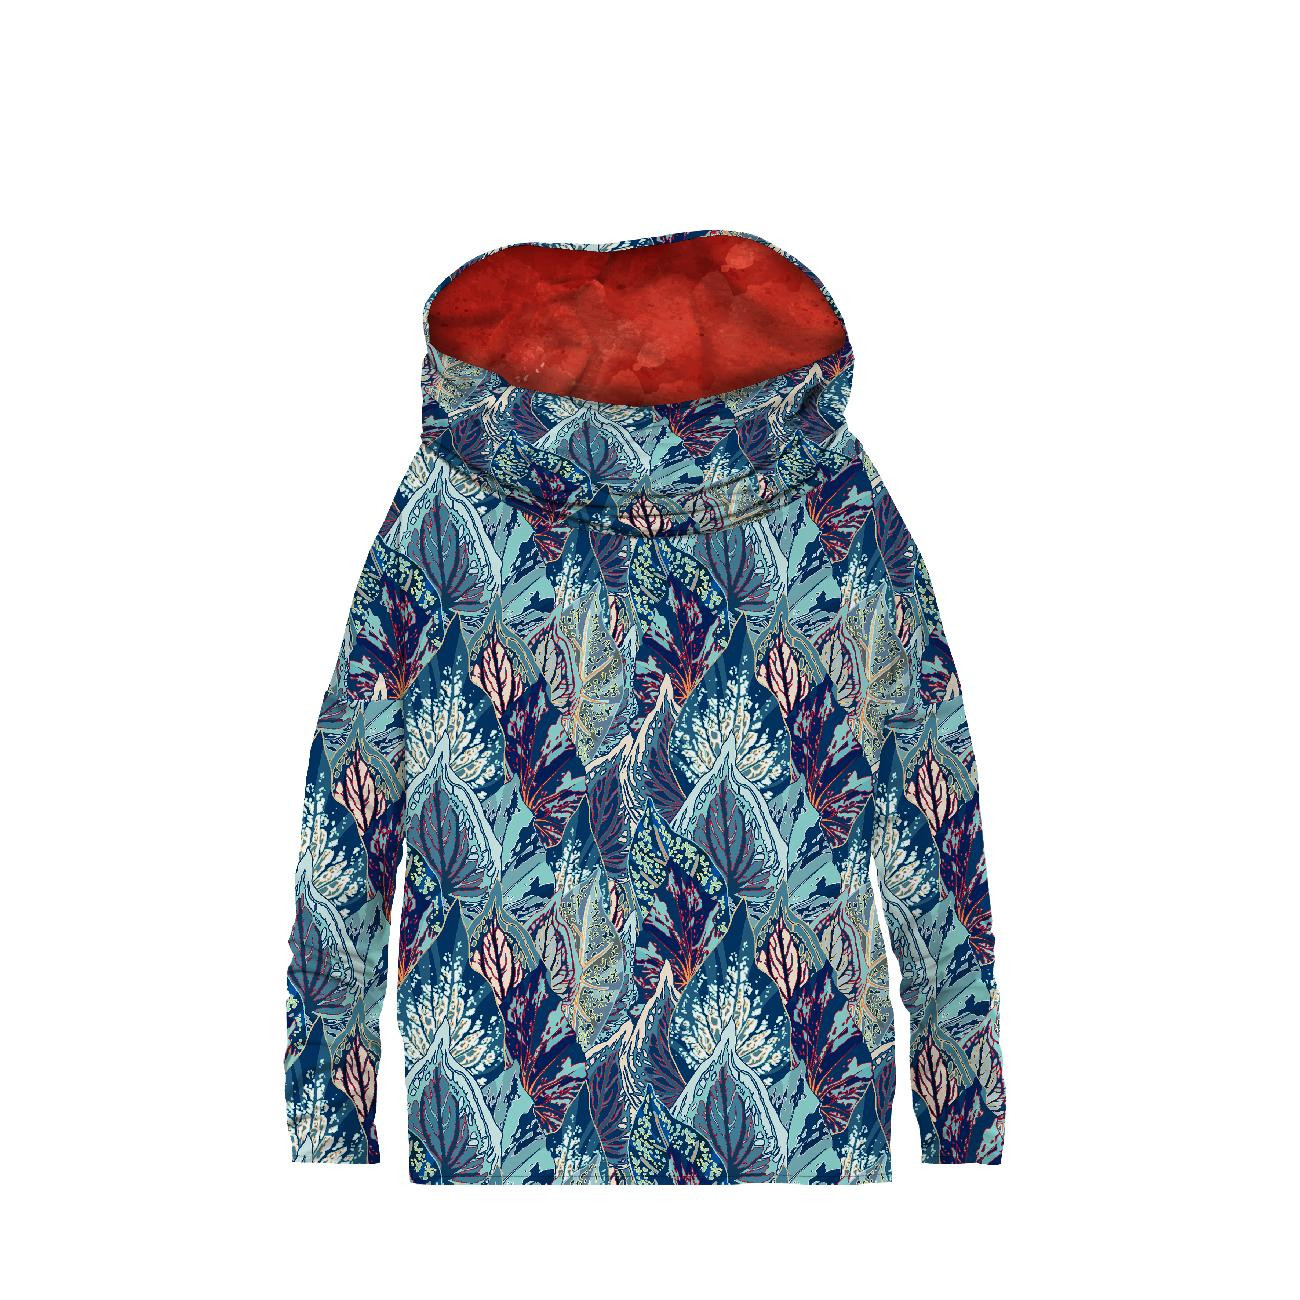 SNOOD SWEATSHIRT (FURIA) - BLUE LEAVES (VINTAGE) - looped knit fabric 